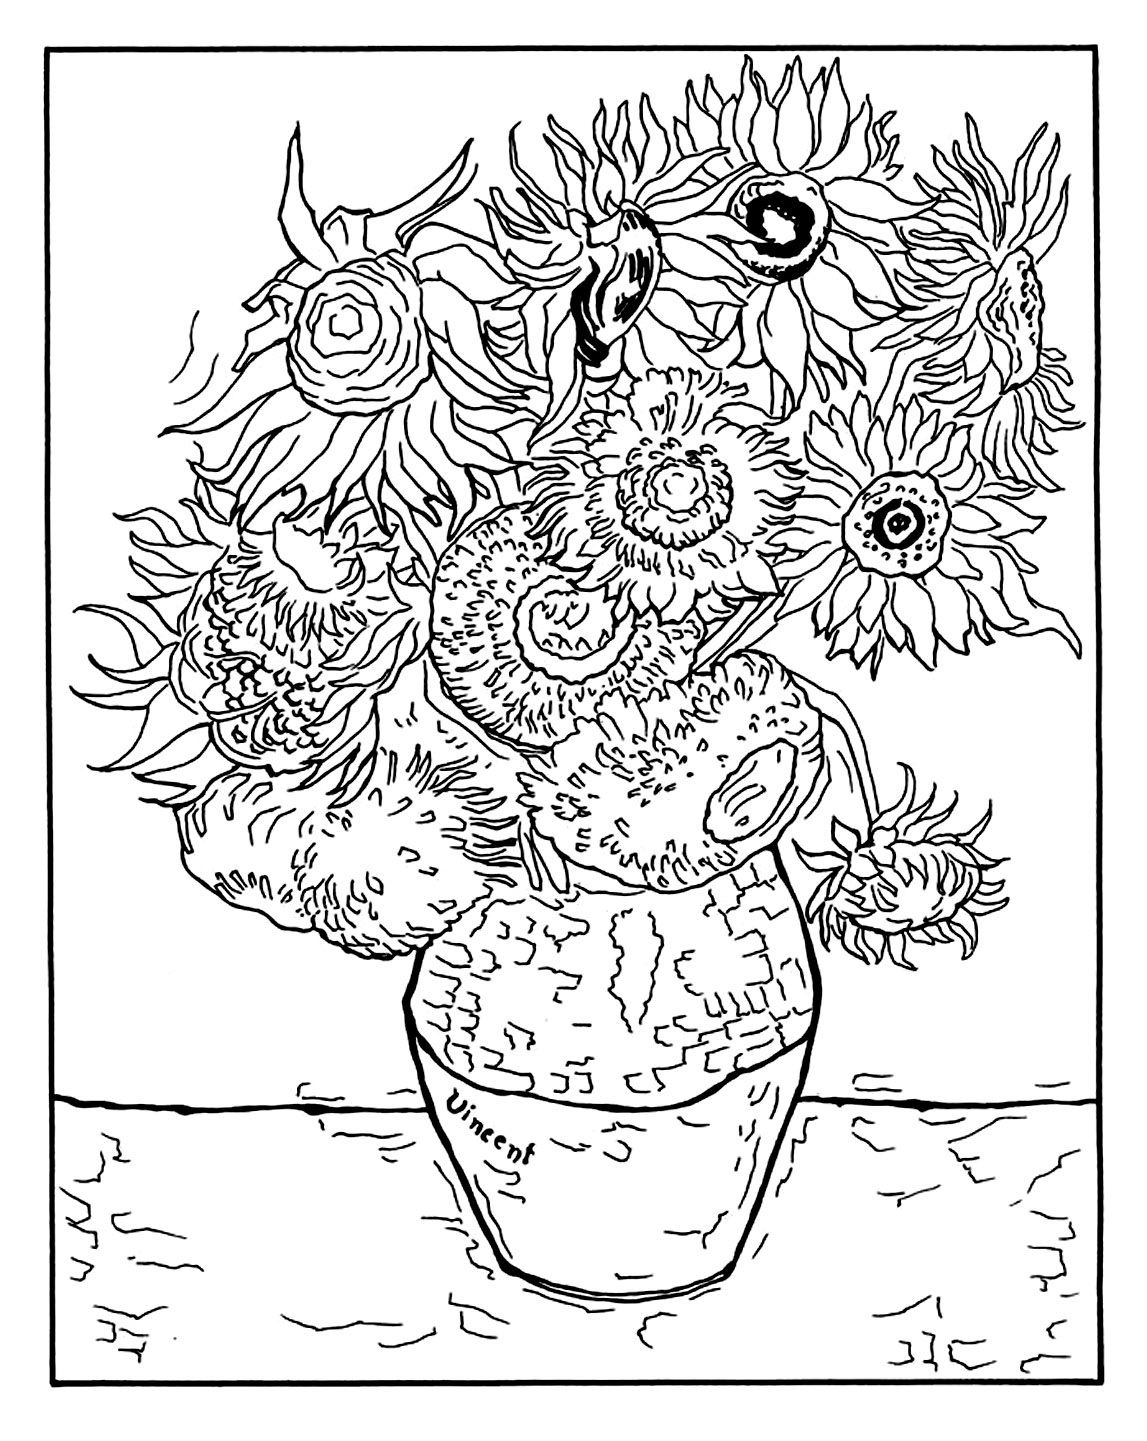 Página para colorir criada a partir de 'Vaso com doze girassóis' de Vincent Van Gogh